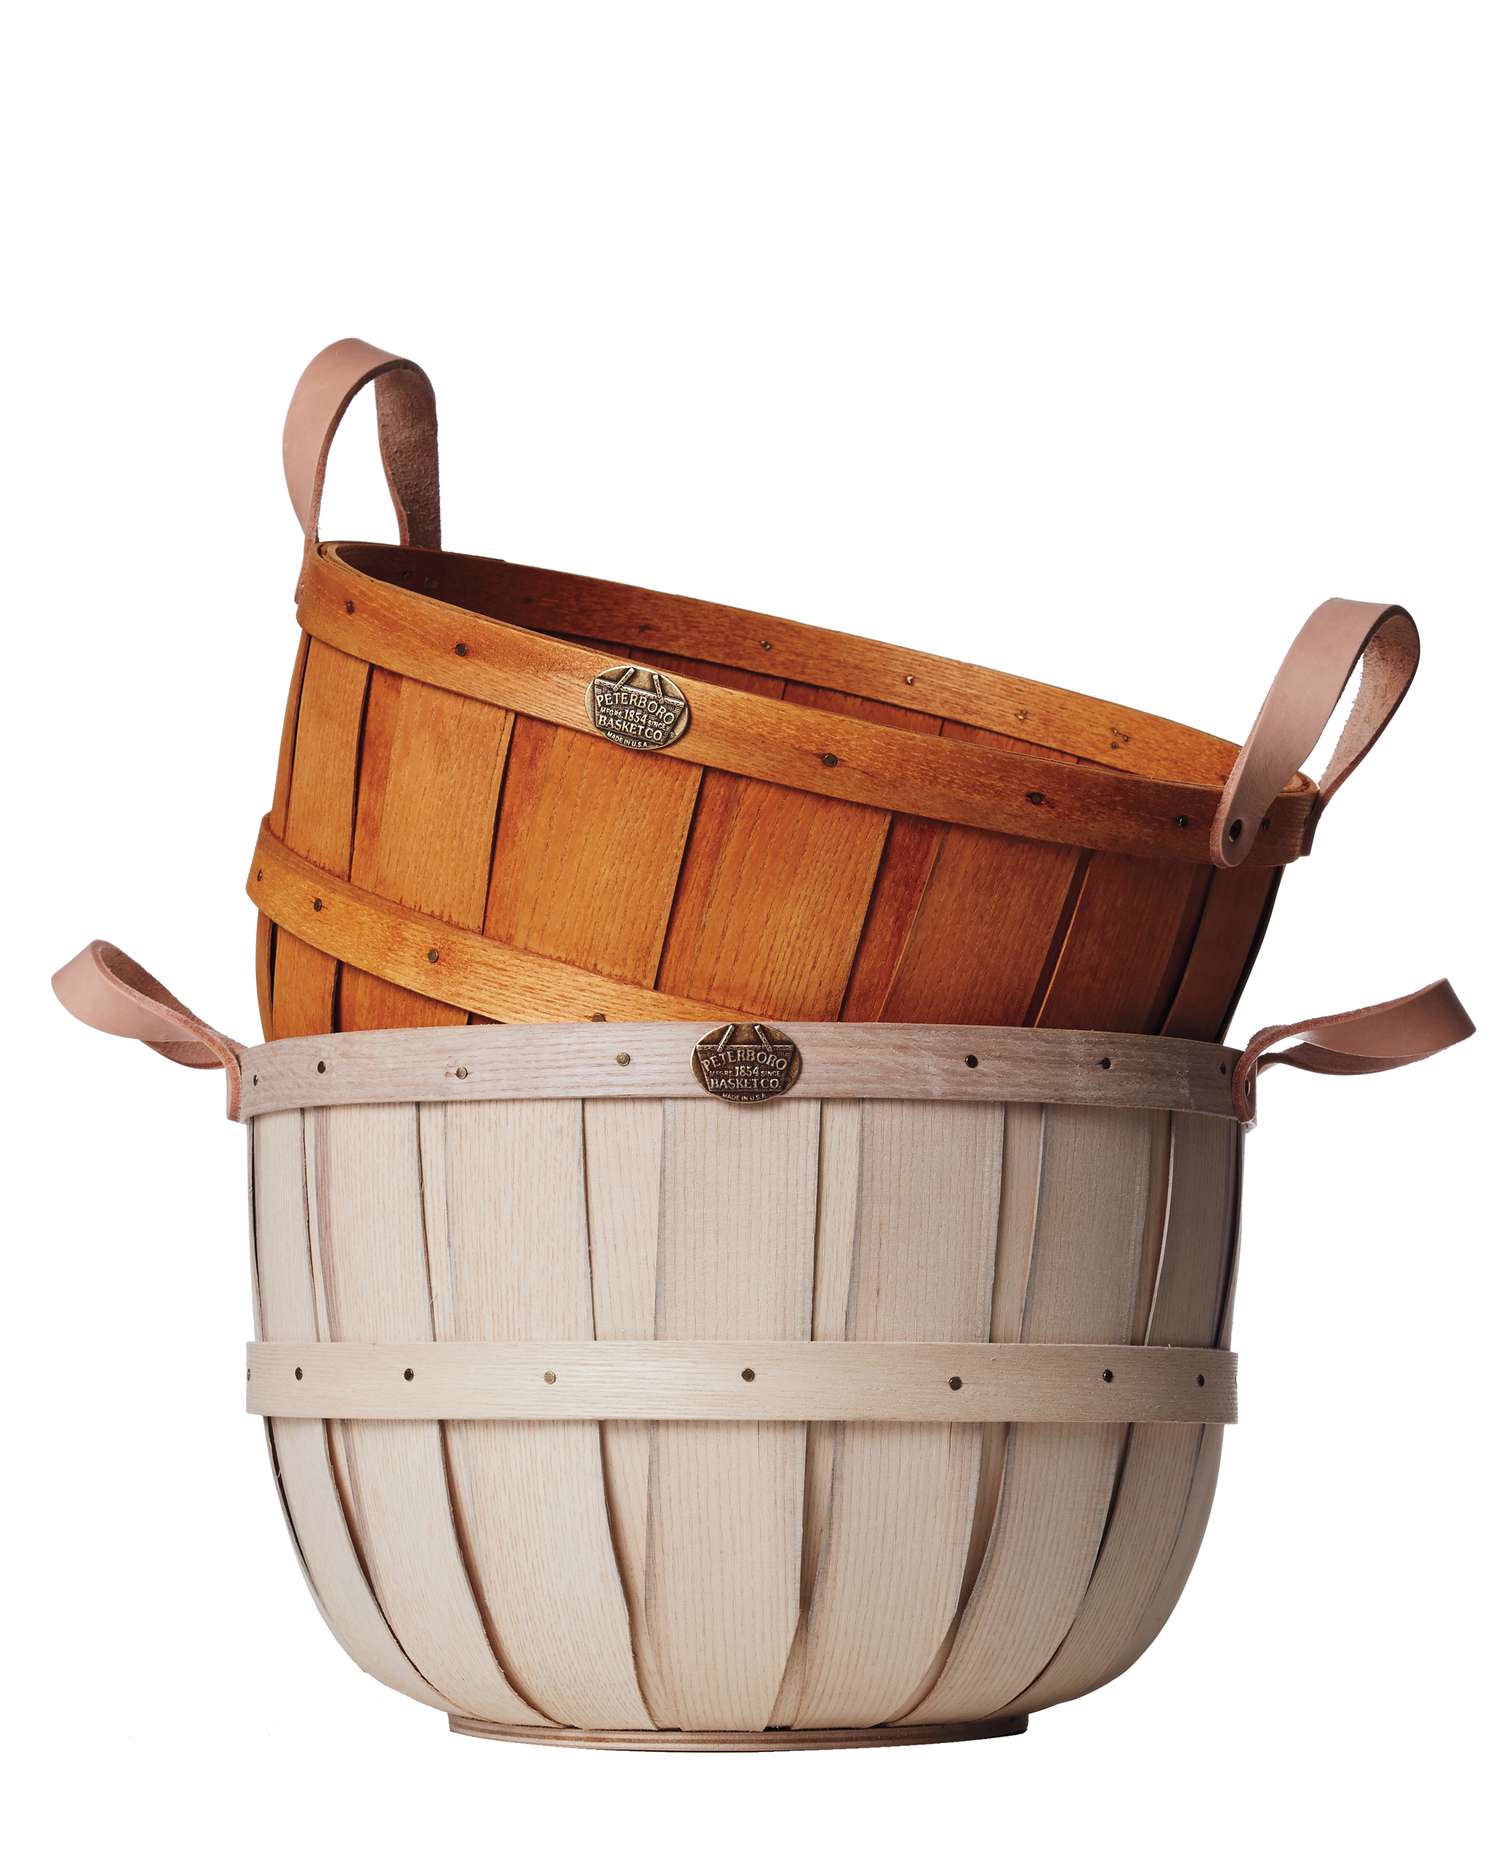 peterboro-wood-baskets-198-d112186.jpg